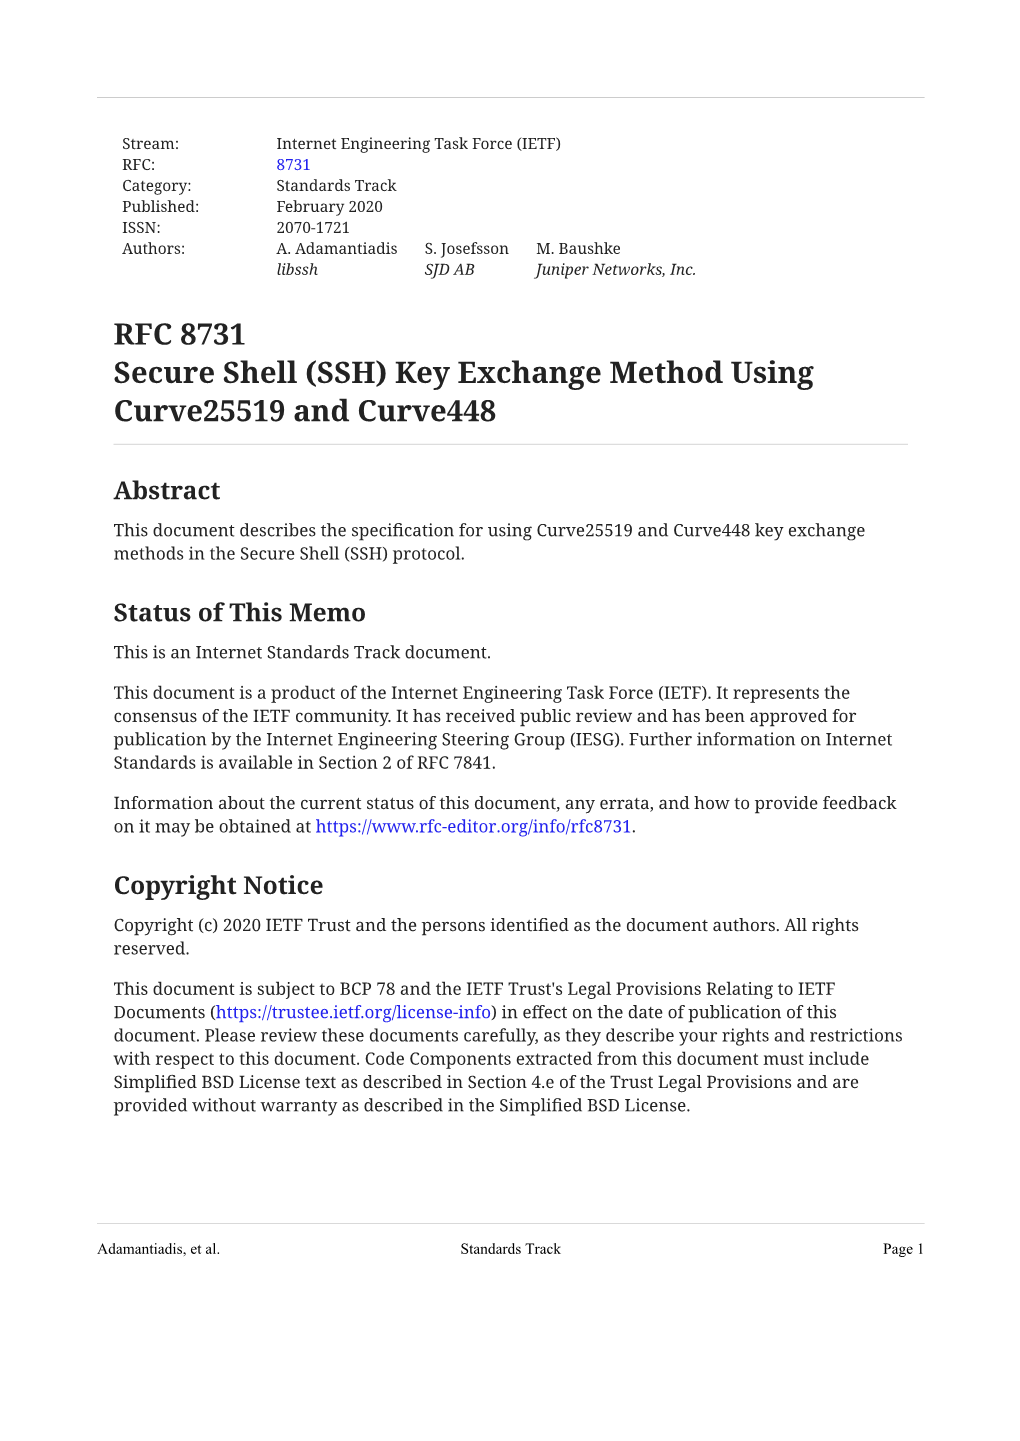 RFC 8731: Secure Shell (SSH) Key Exchange Method Using